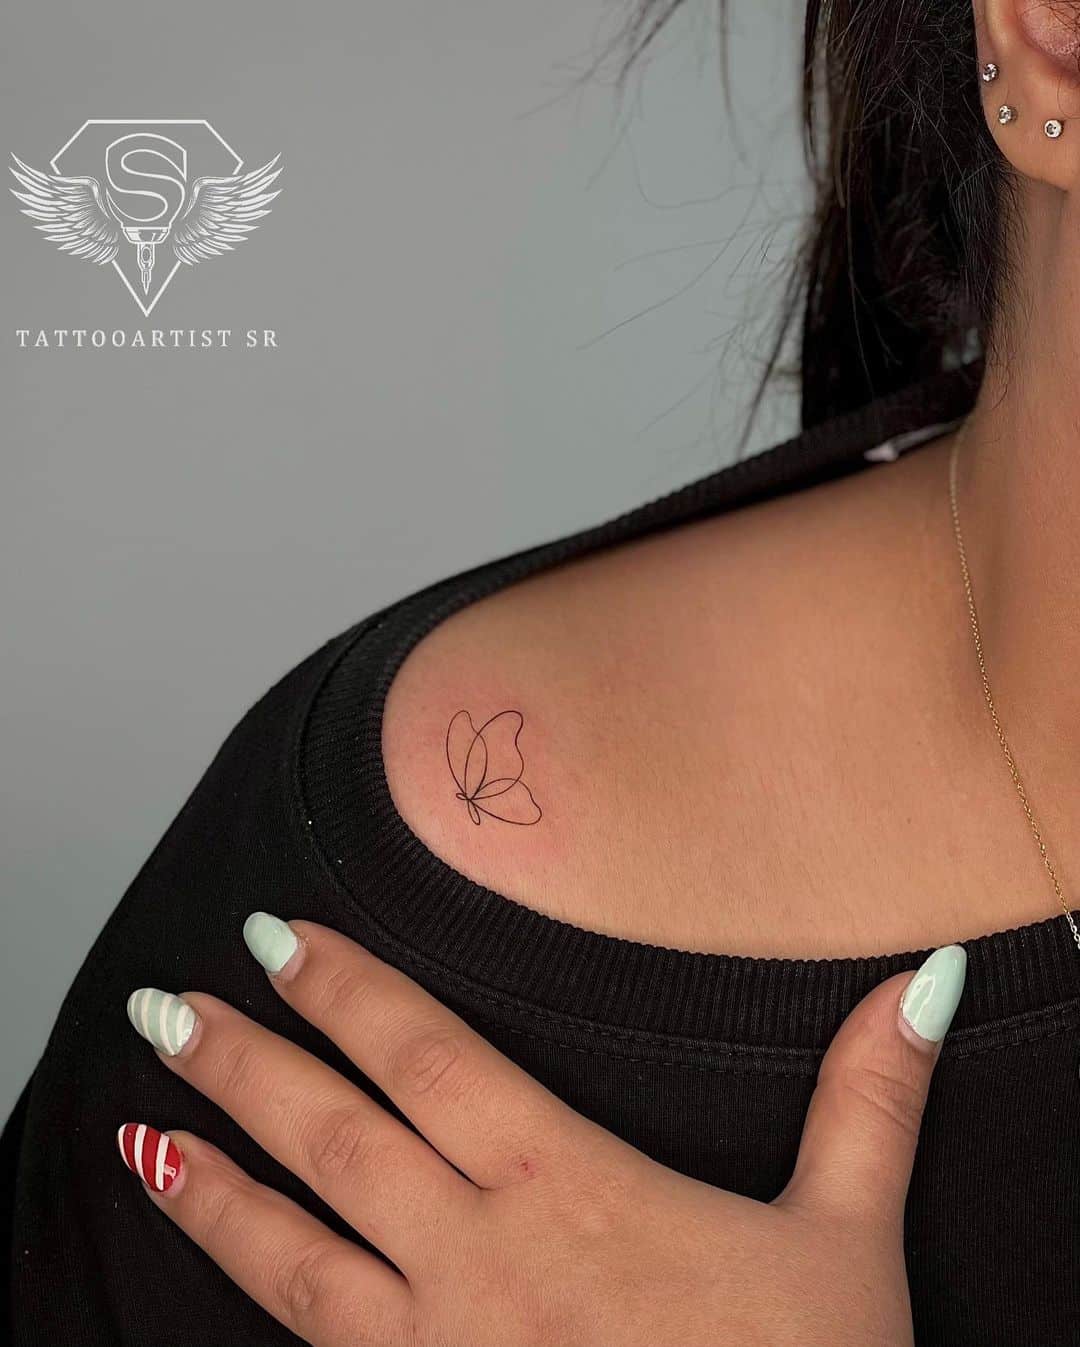 Butterfly tattoo by tattooartist sr